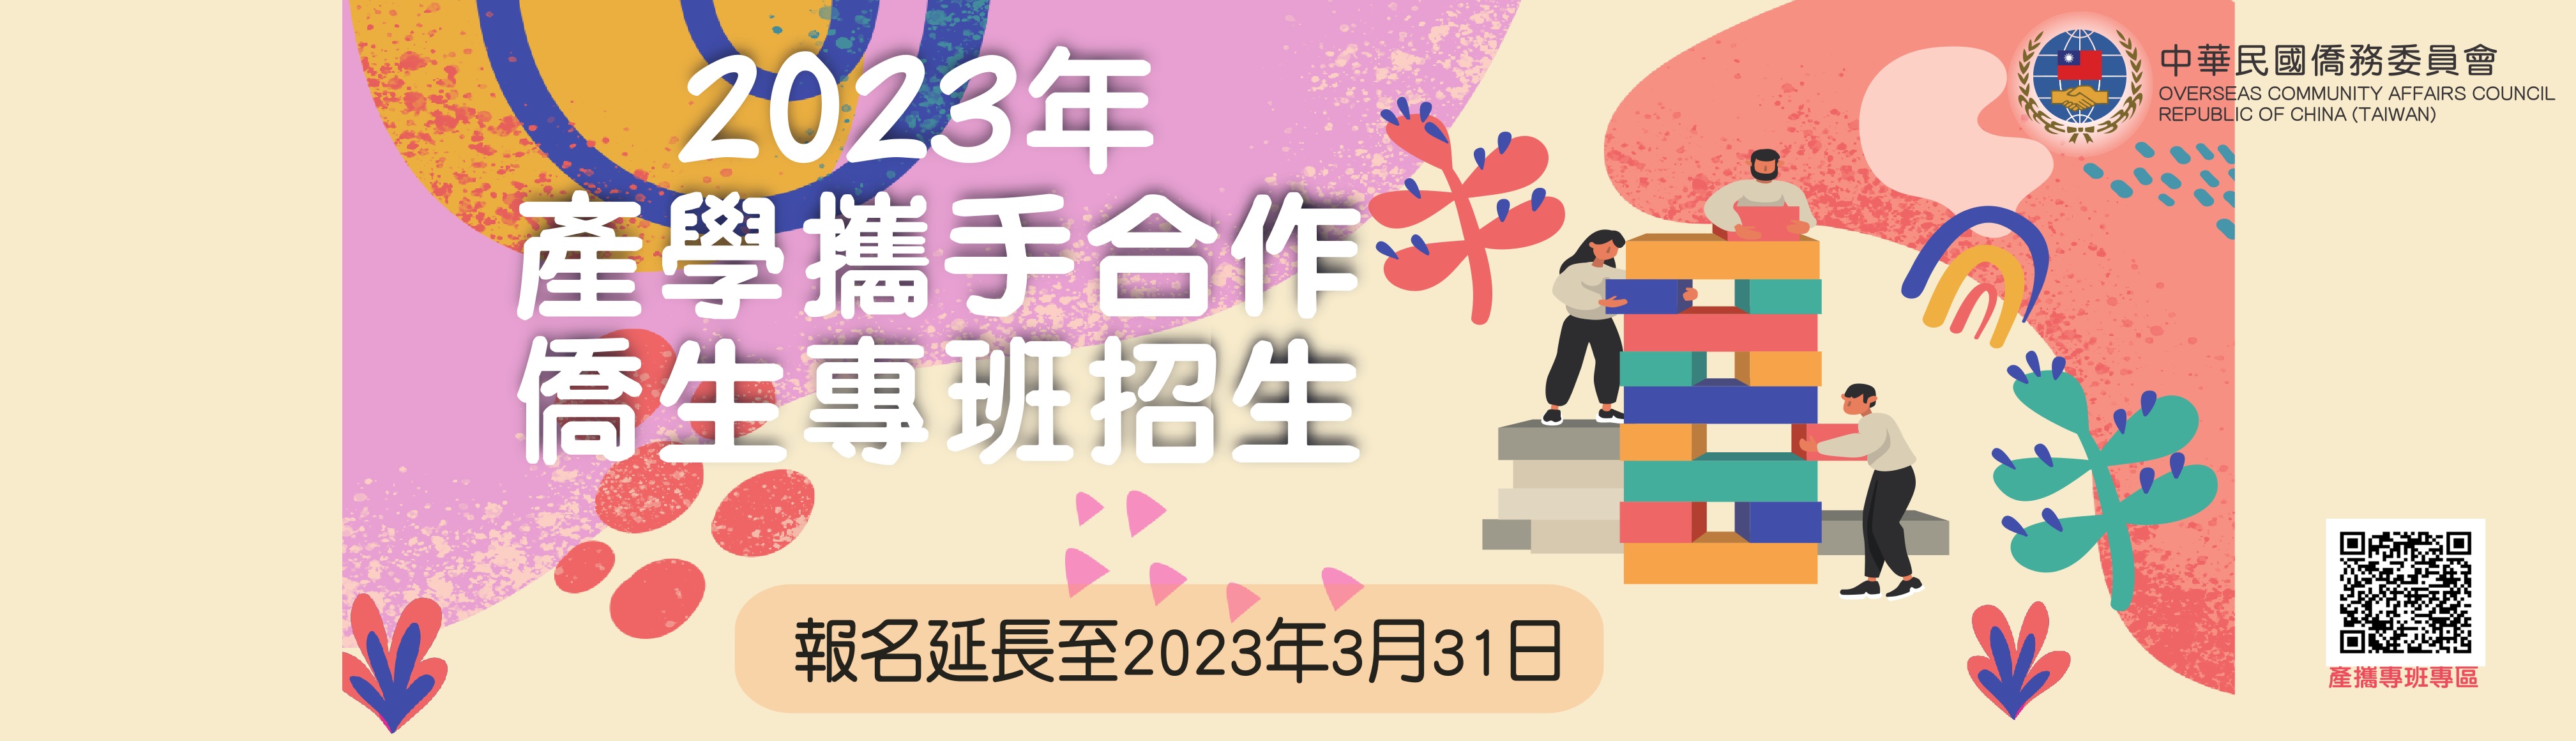 2023年產學攜手合作僑生專班招生